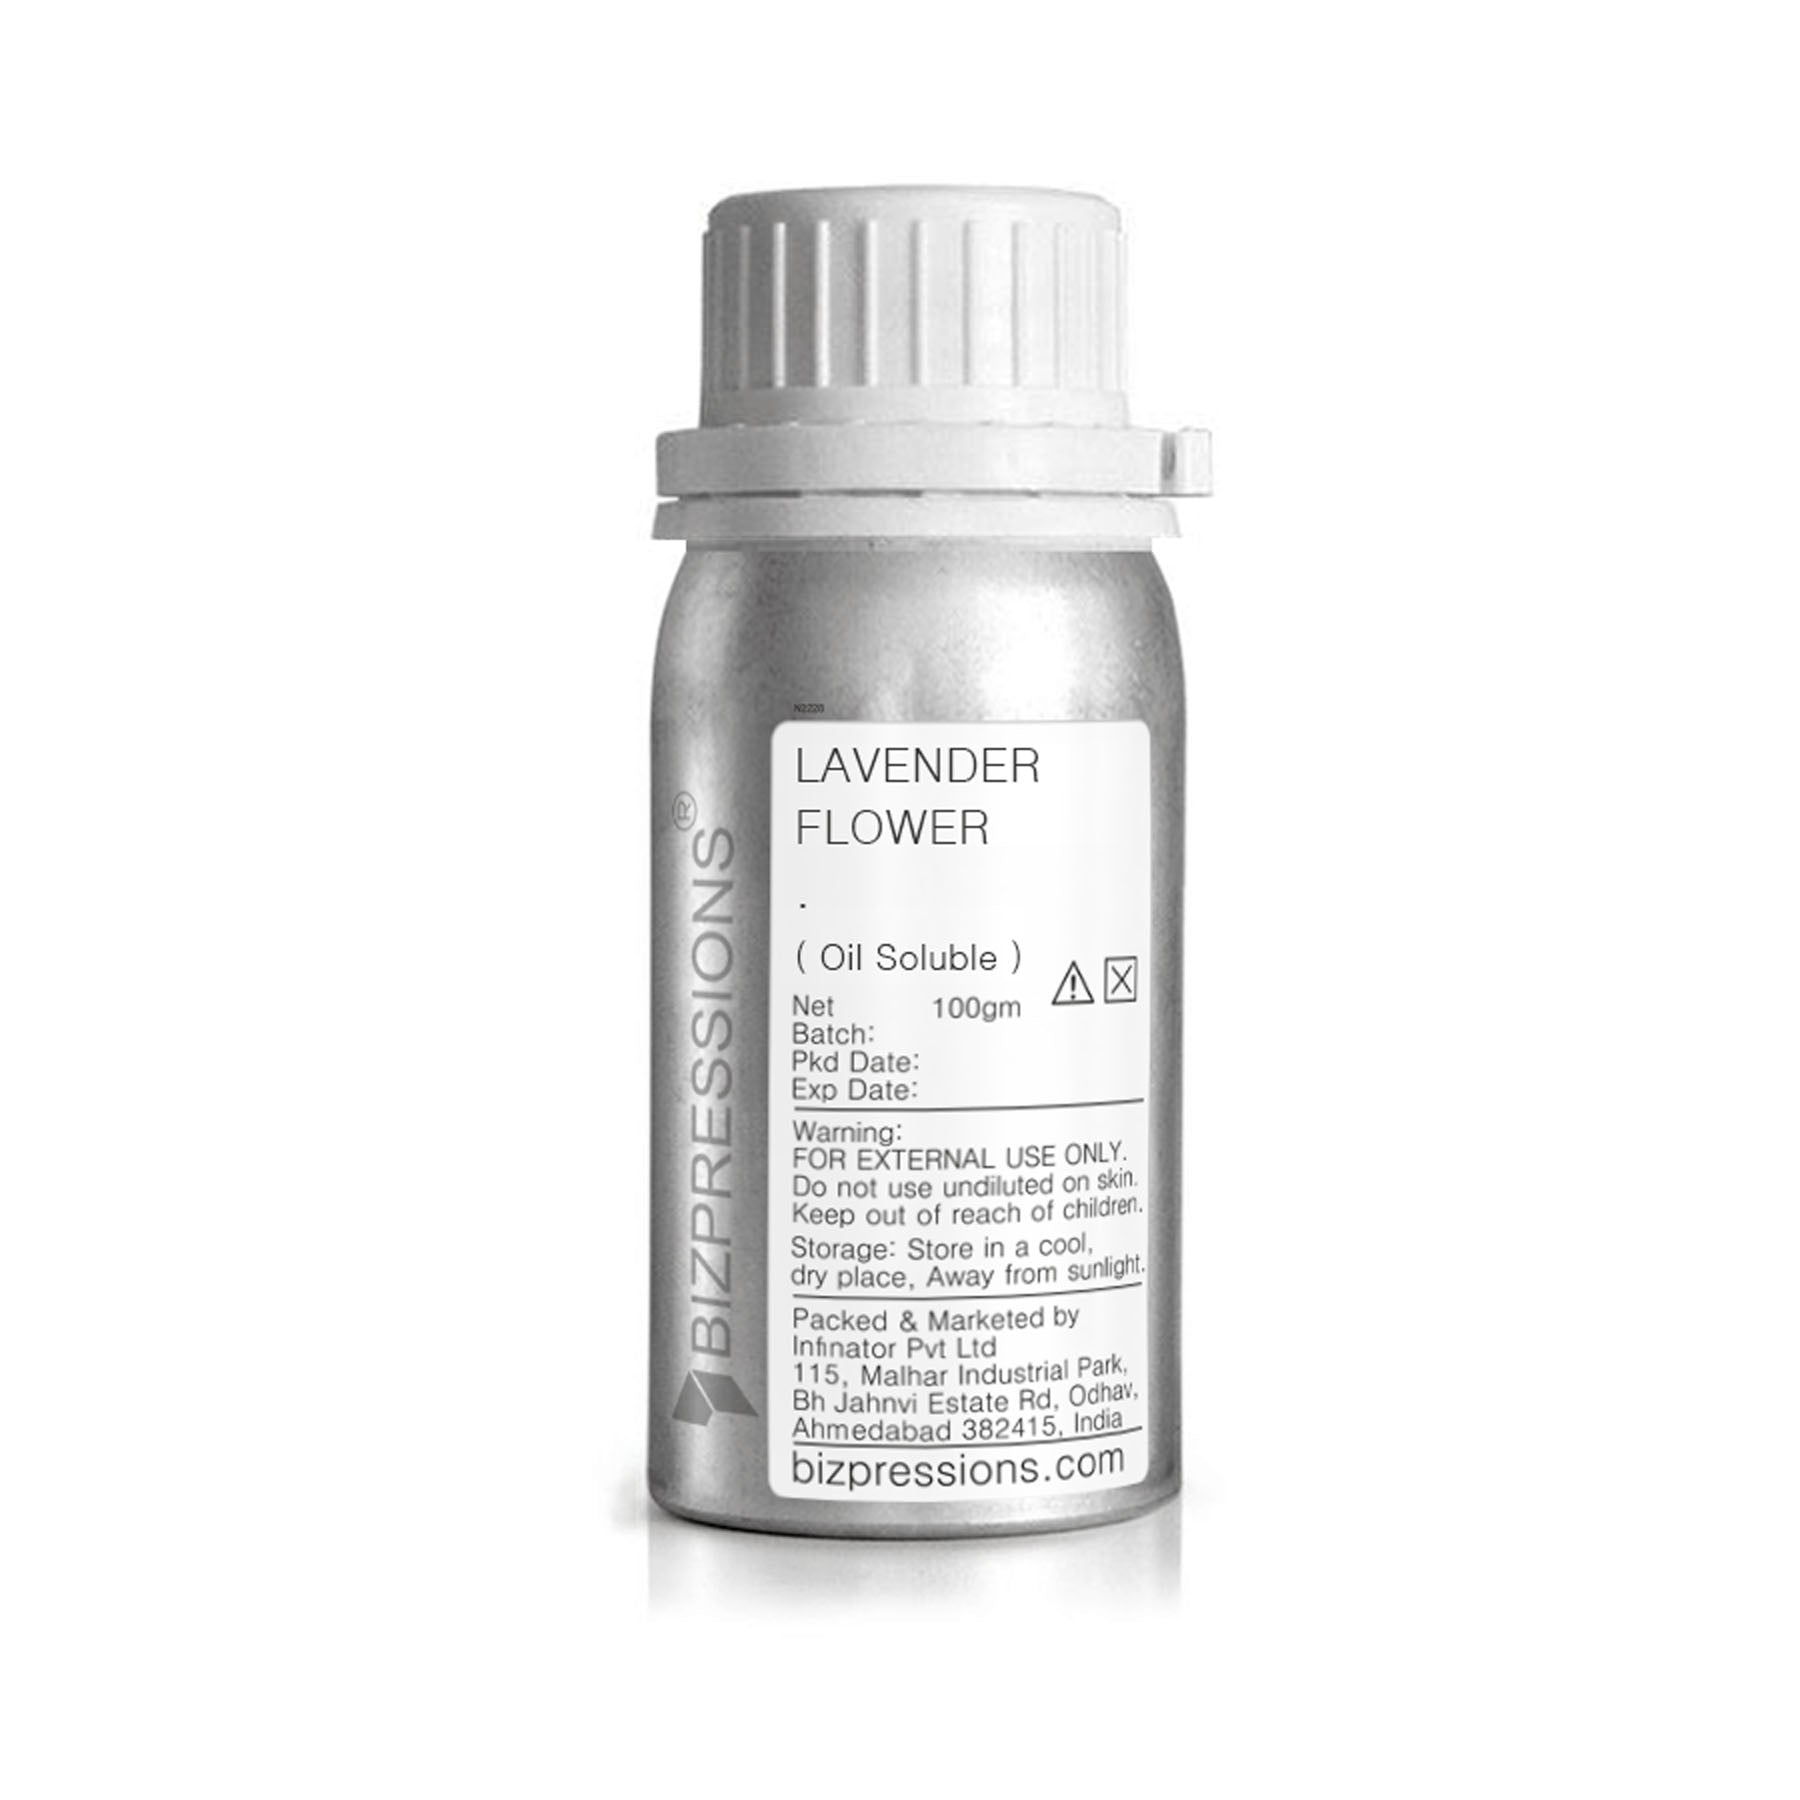 LAVENDER FLOWER - Fragrance ( Oil Soluble ) - 100 gm